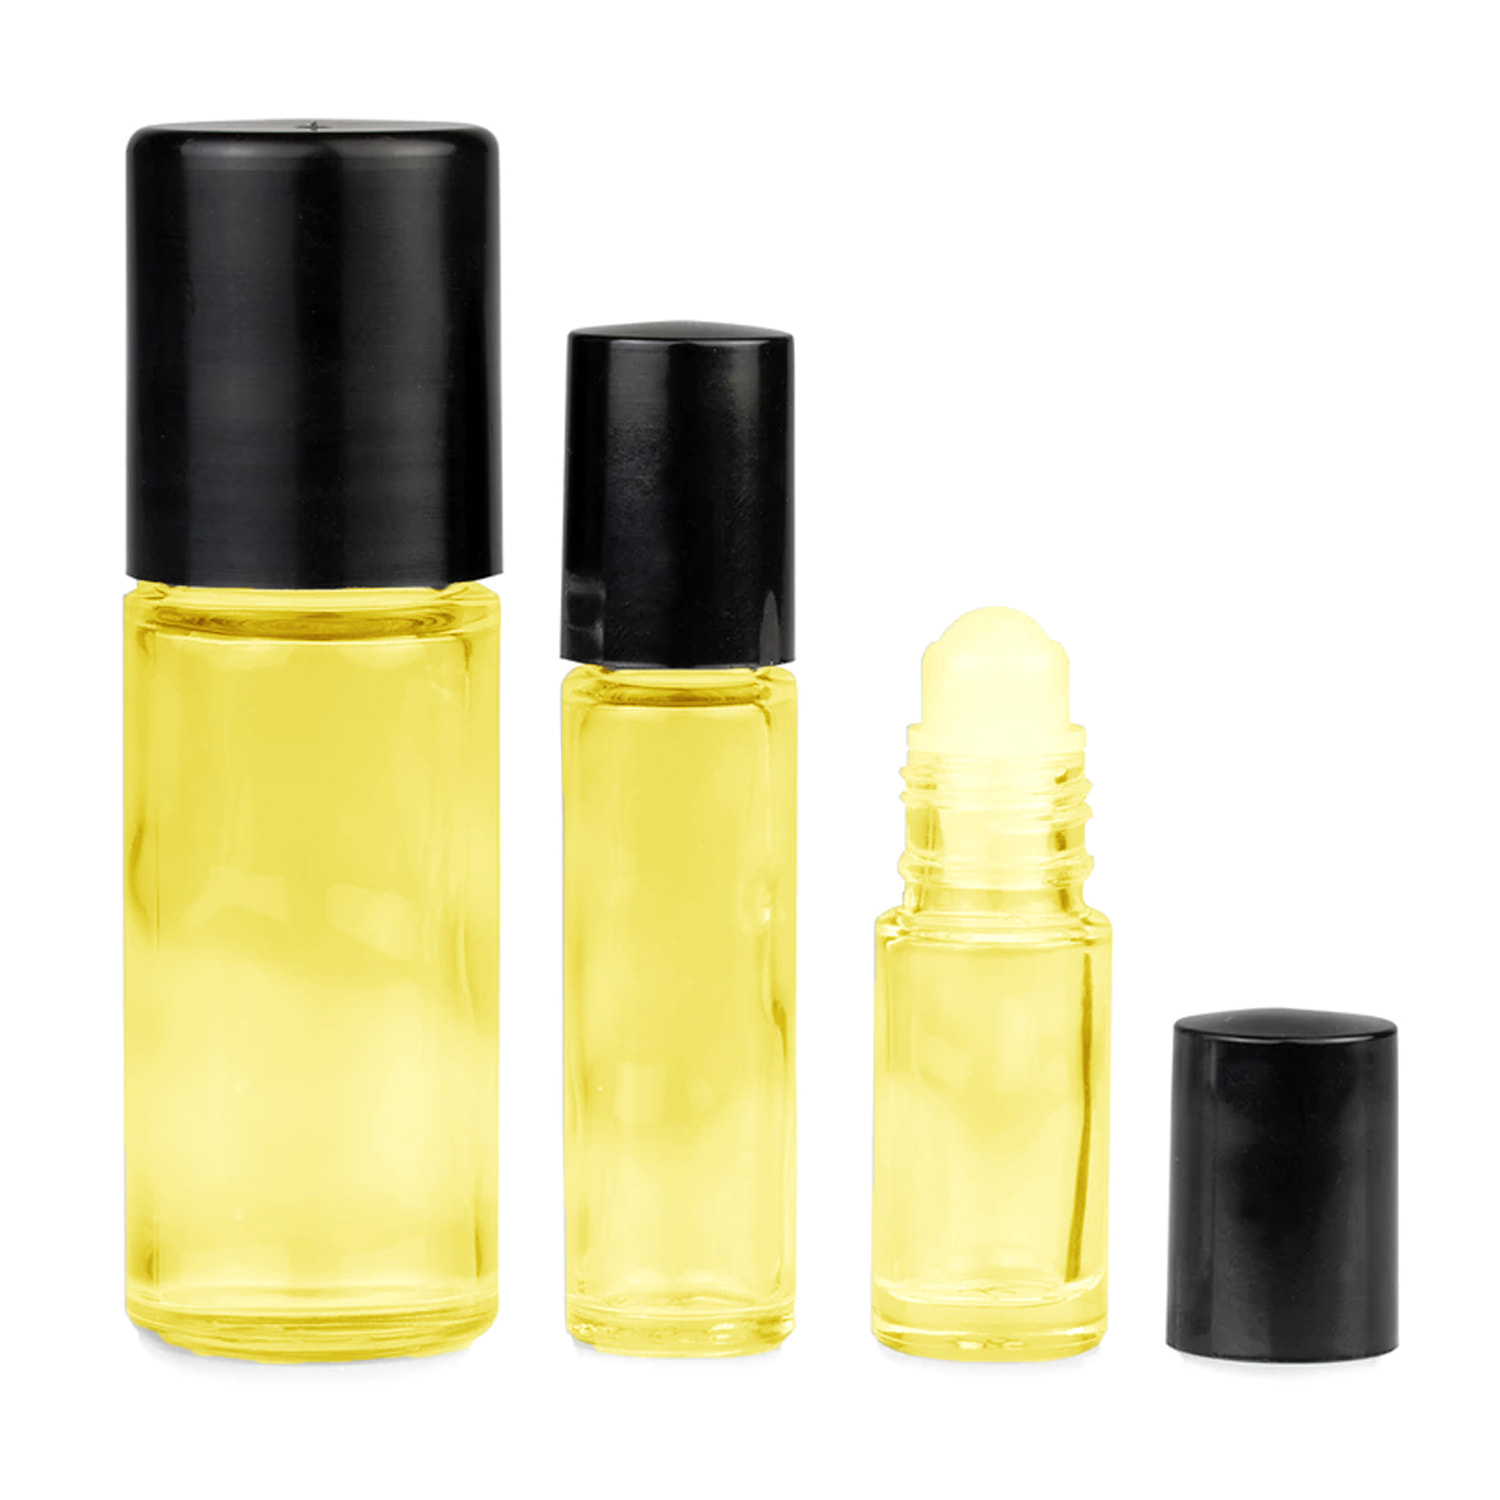 Chanel CHANCE type body oil-Women's Perfume- Alcohol Free Designer Inspired Fragrance  Body Oils -7 ml 10 ml 15 ml 30 ml